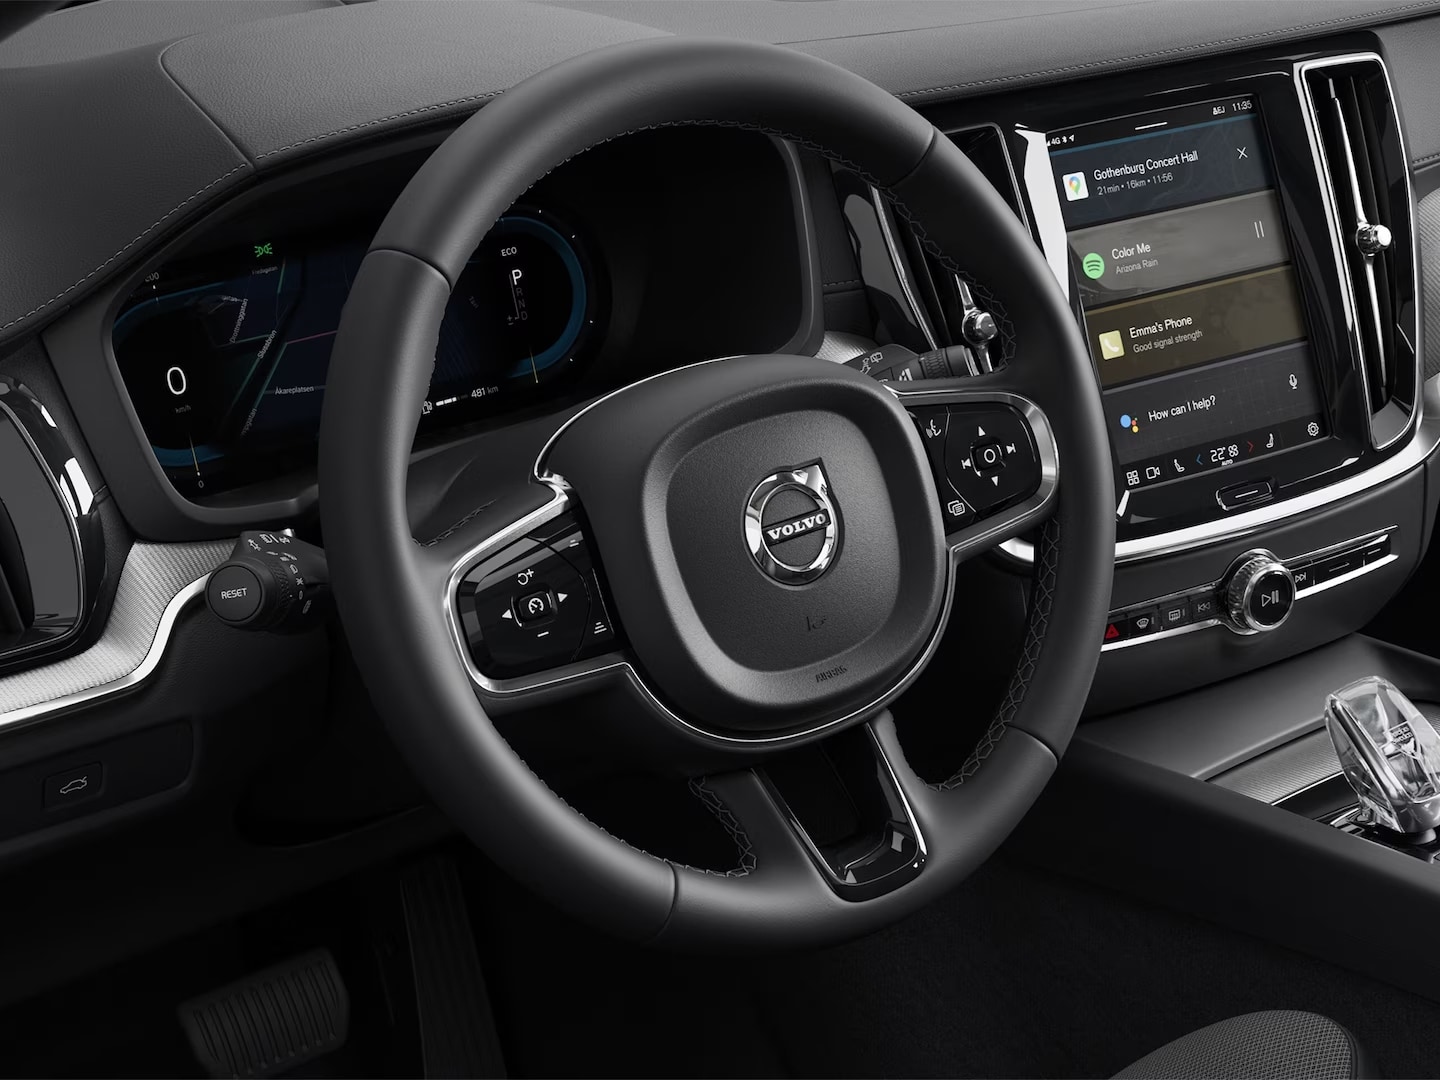 عجلة القيادة ولوحة أجهزة القياس والكونسول المركزي وشاشة نظام المعلومات والترفيه التي تعمل باللمس في فولفو S60 السيارة الهجينة بالطاقة المساعدة.